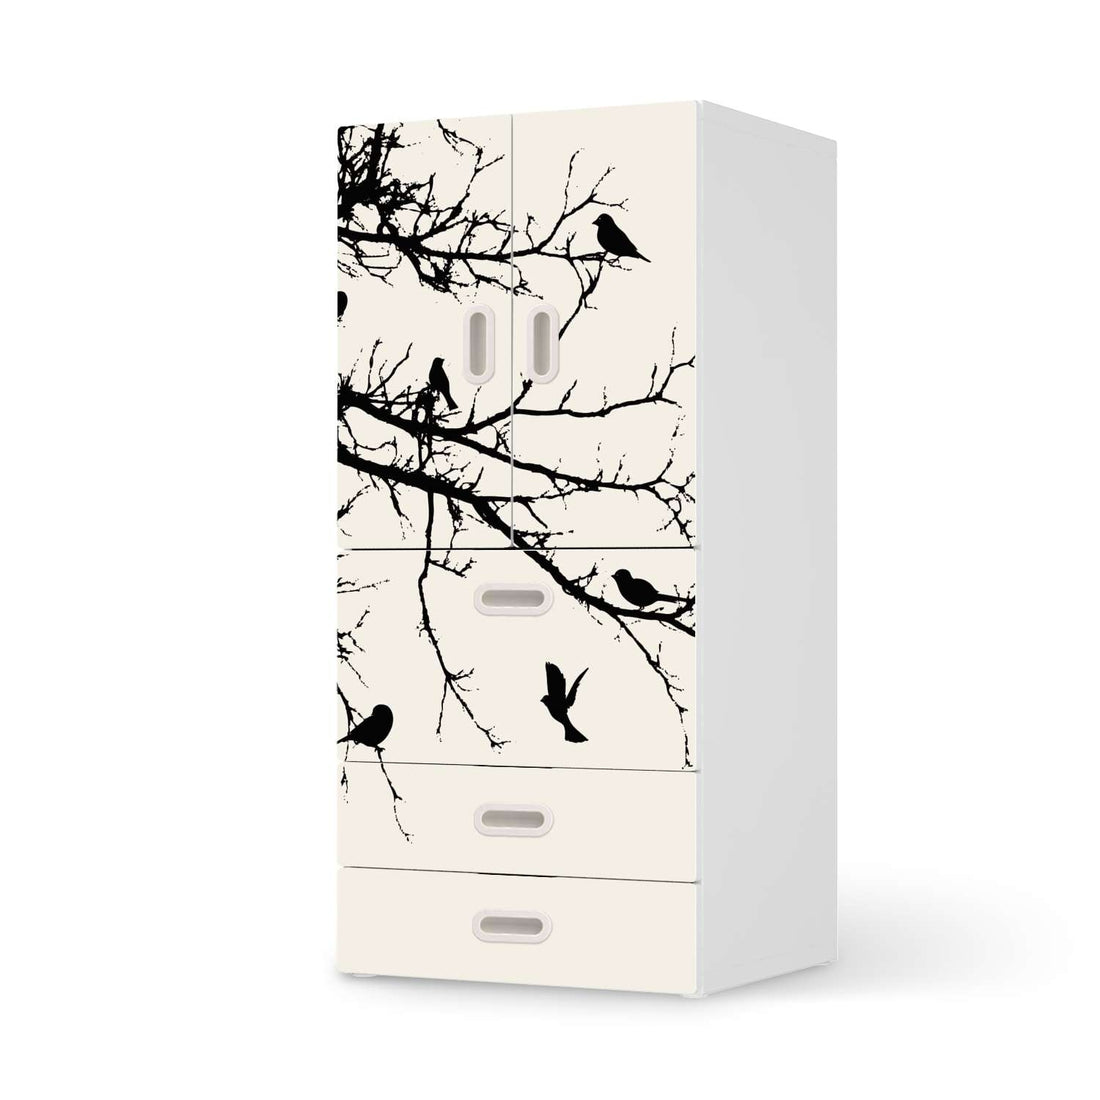 Möbelfolie Tree and Birds 1 - IKEA Stuva / Fritids kombiniert - 3 Schubladen und 2 kleine Türen  - weiss